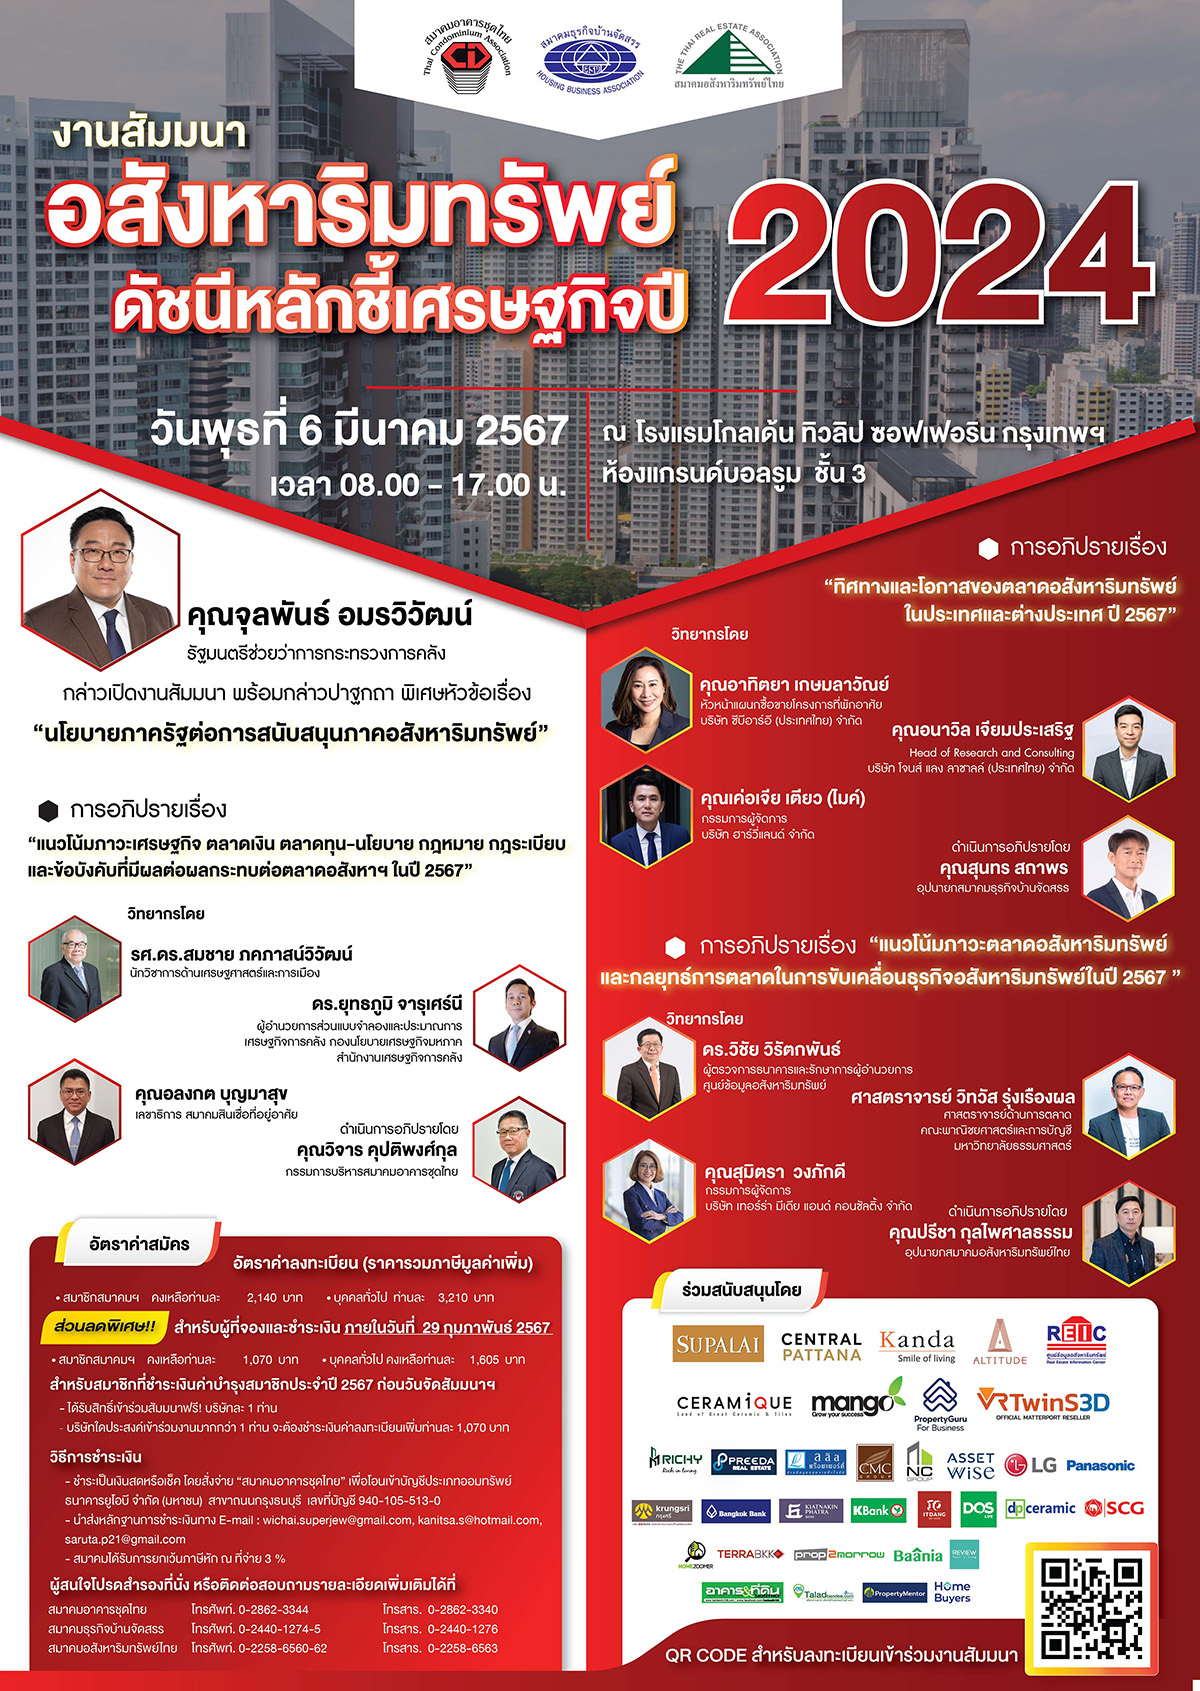 📣📣 สมาคมอาคารชุดไทย สมาคมธุรกิจบ้านจัดสรร และสมาคมอสังหาริมทรัพย์ไทย ขอเชิญเข้าร่วมสัมมนาประจำปี ‘อสังหาริมทรัพย์ ดัชนีหลักชี้เศรษฐกิจปี 2024’